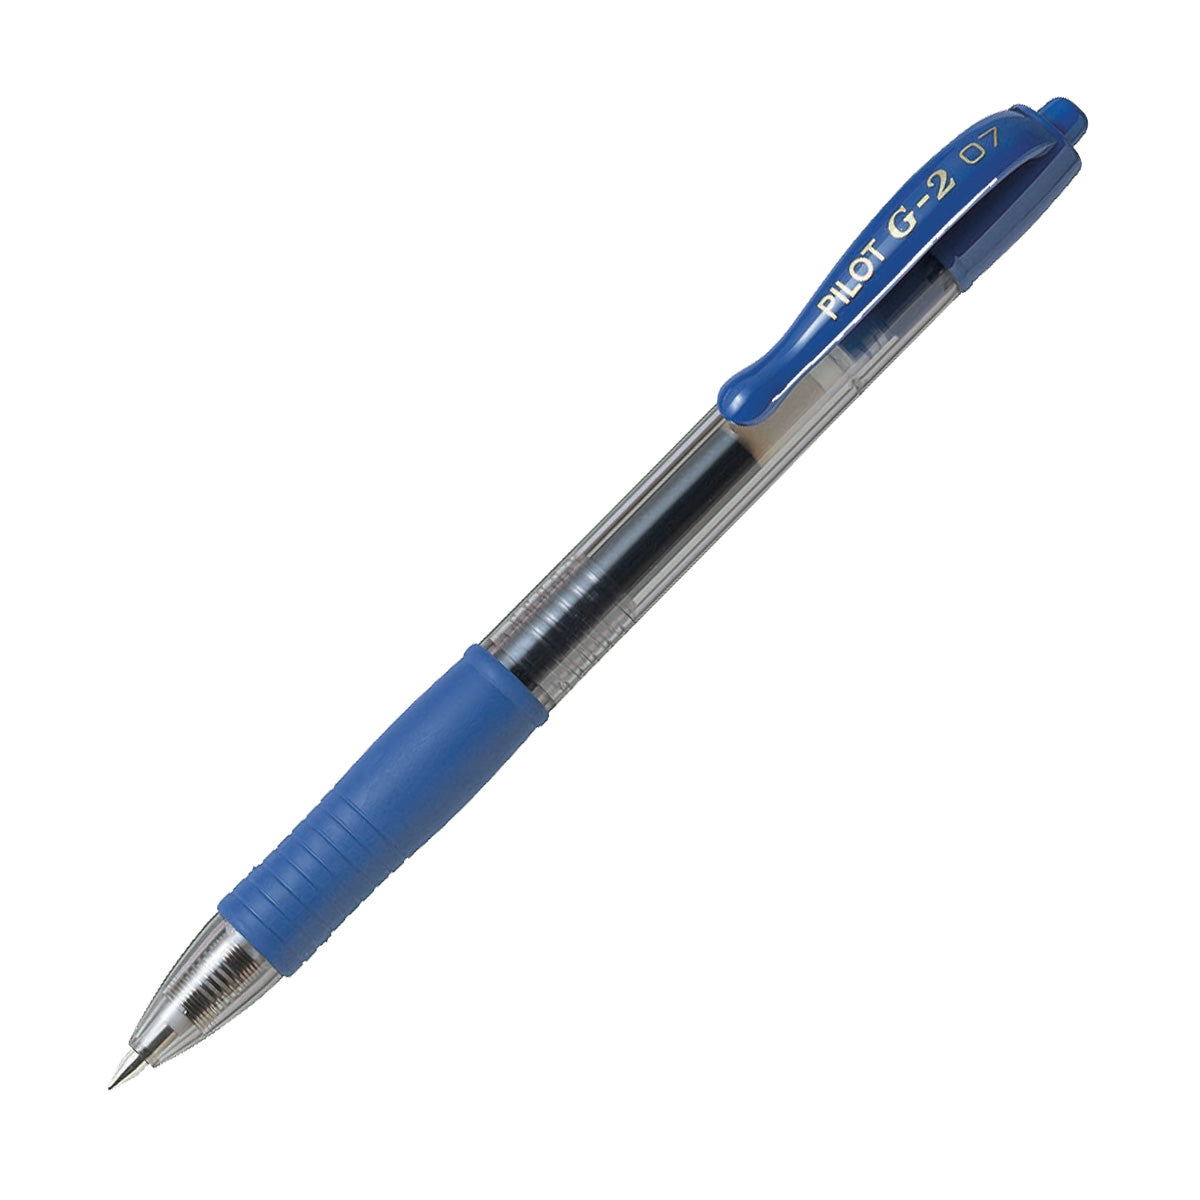 Pilot - G2 - Gel pen Ink - Retractable Rollerball - Blue - Medium Tip